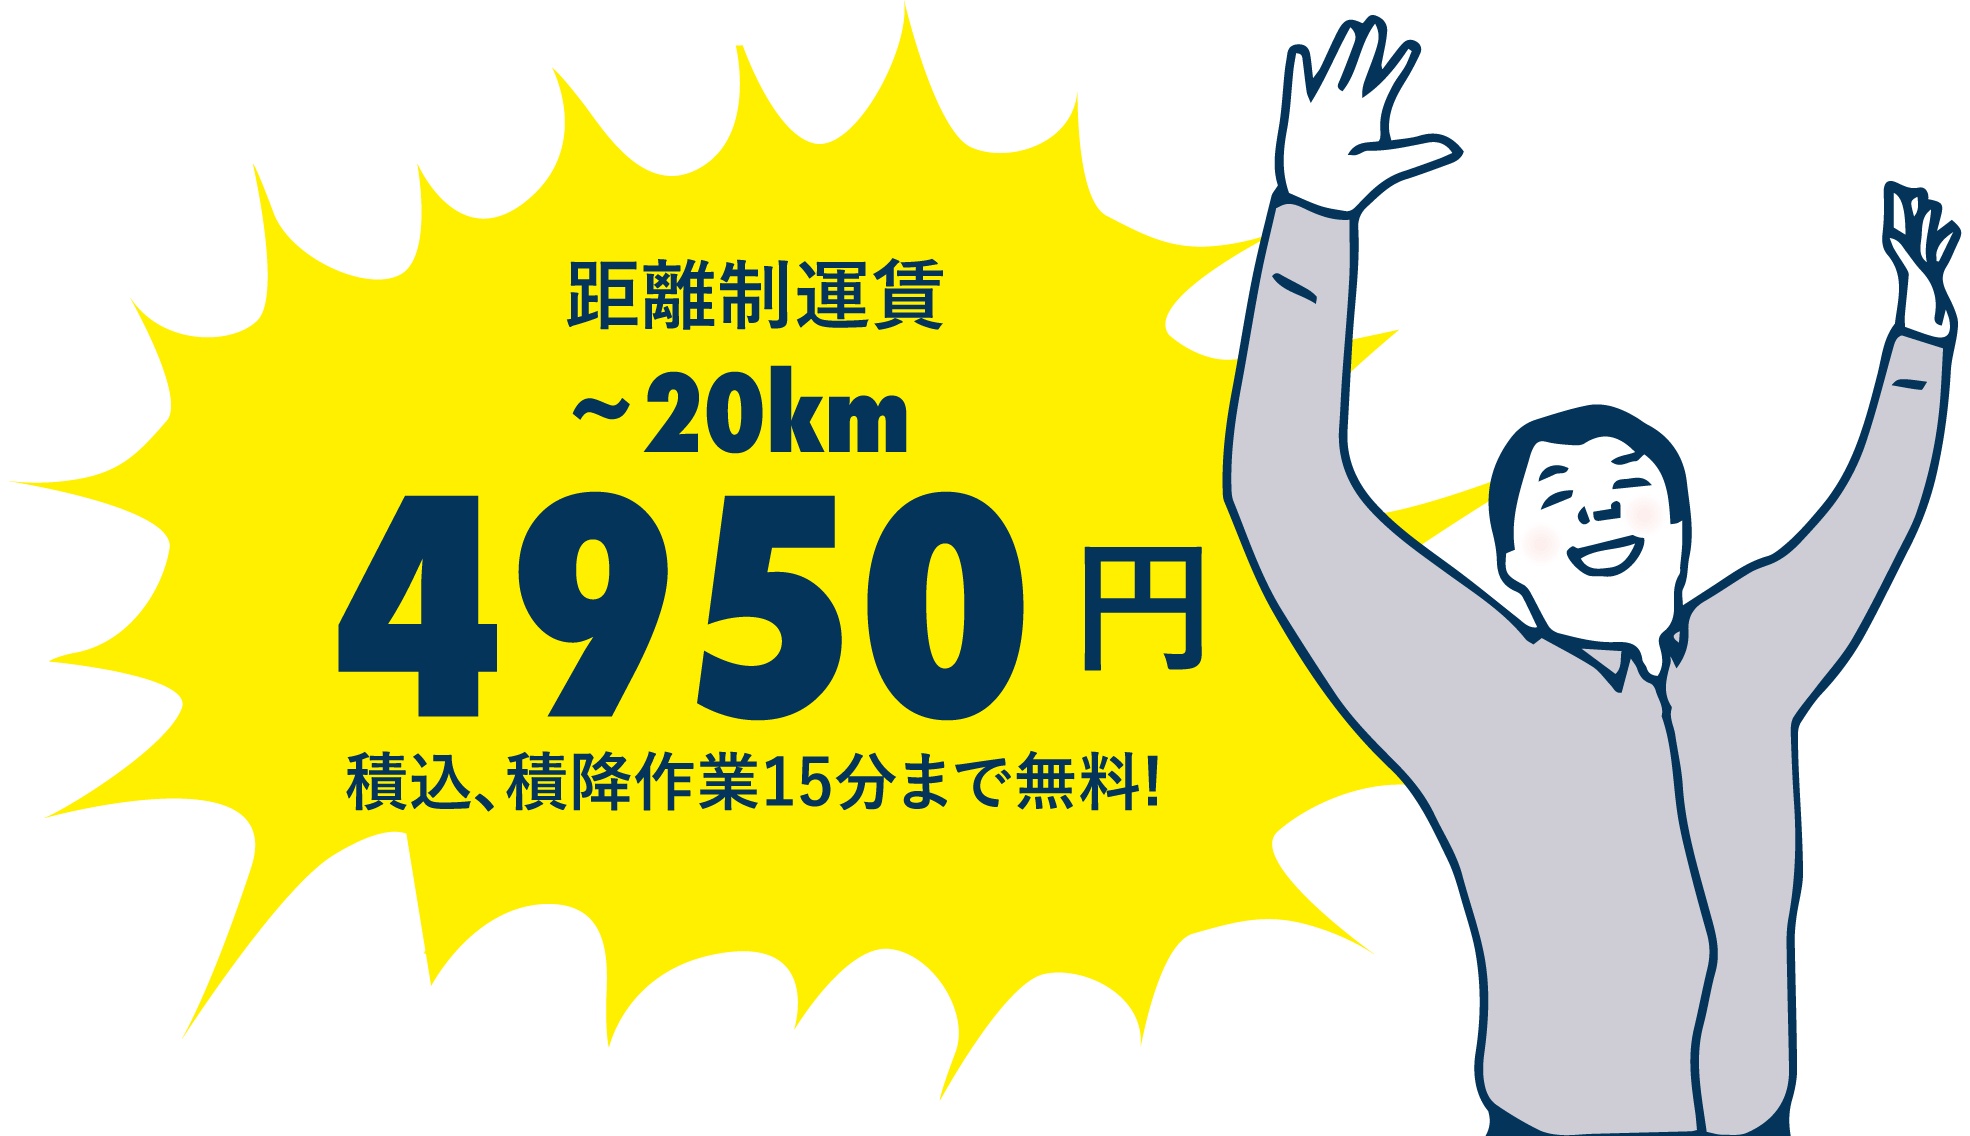 20km4950円